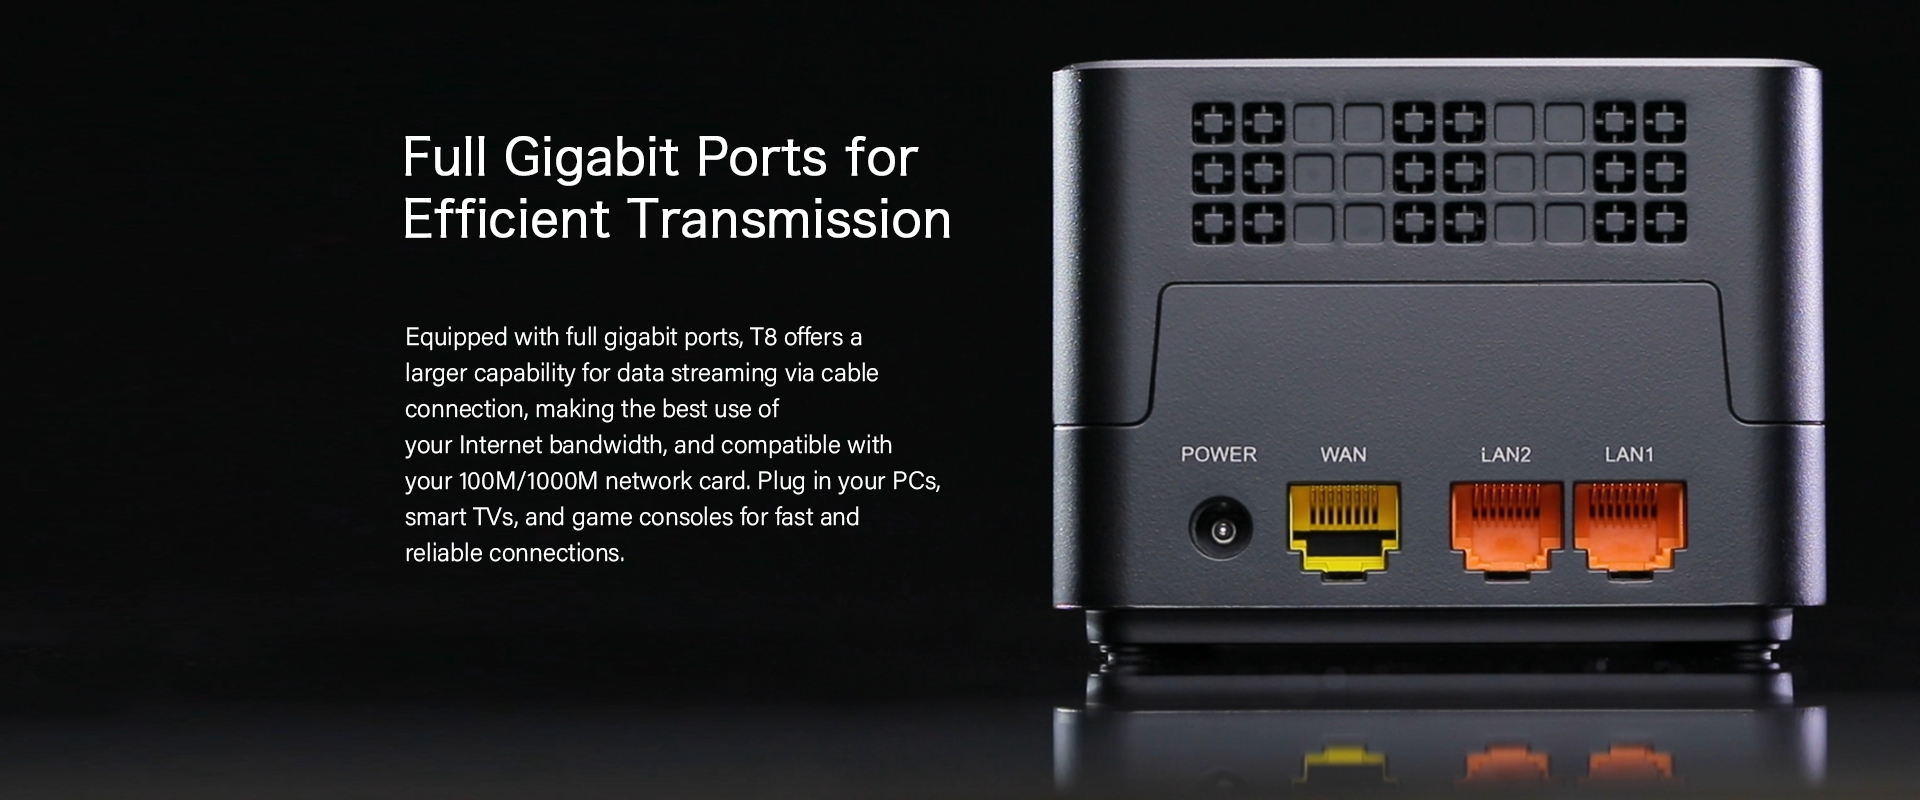 Gigabit ports for efficient transmission 